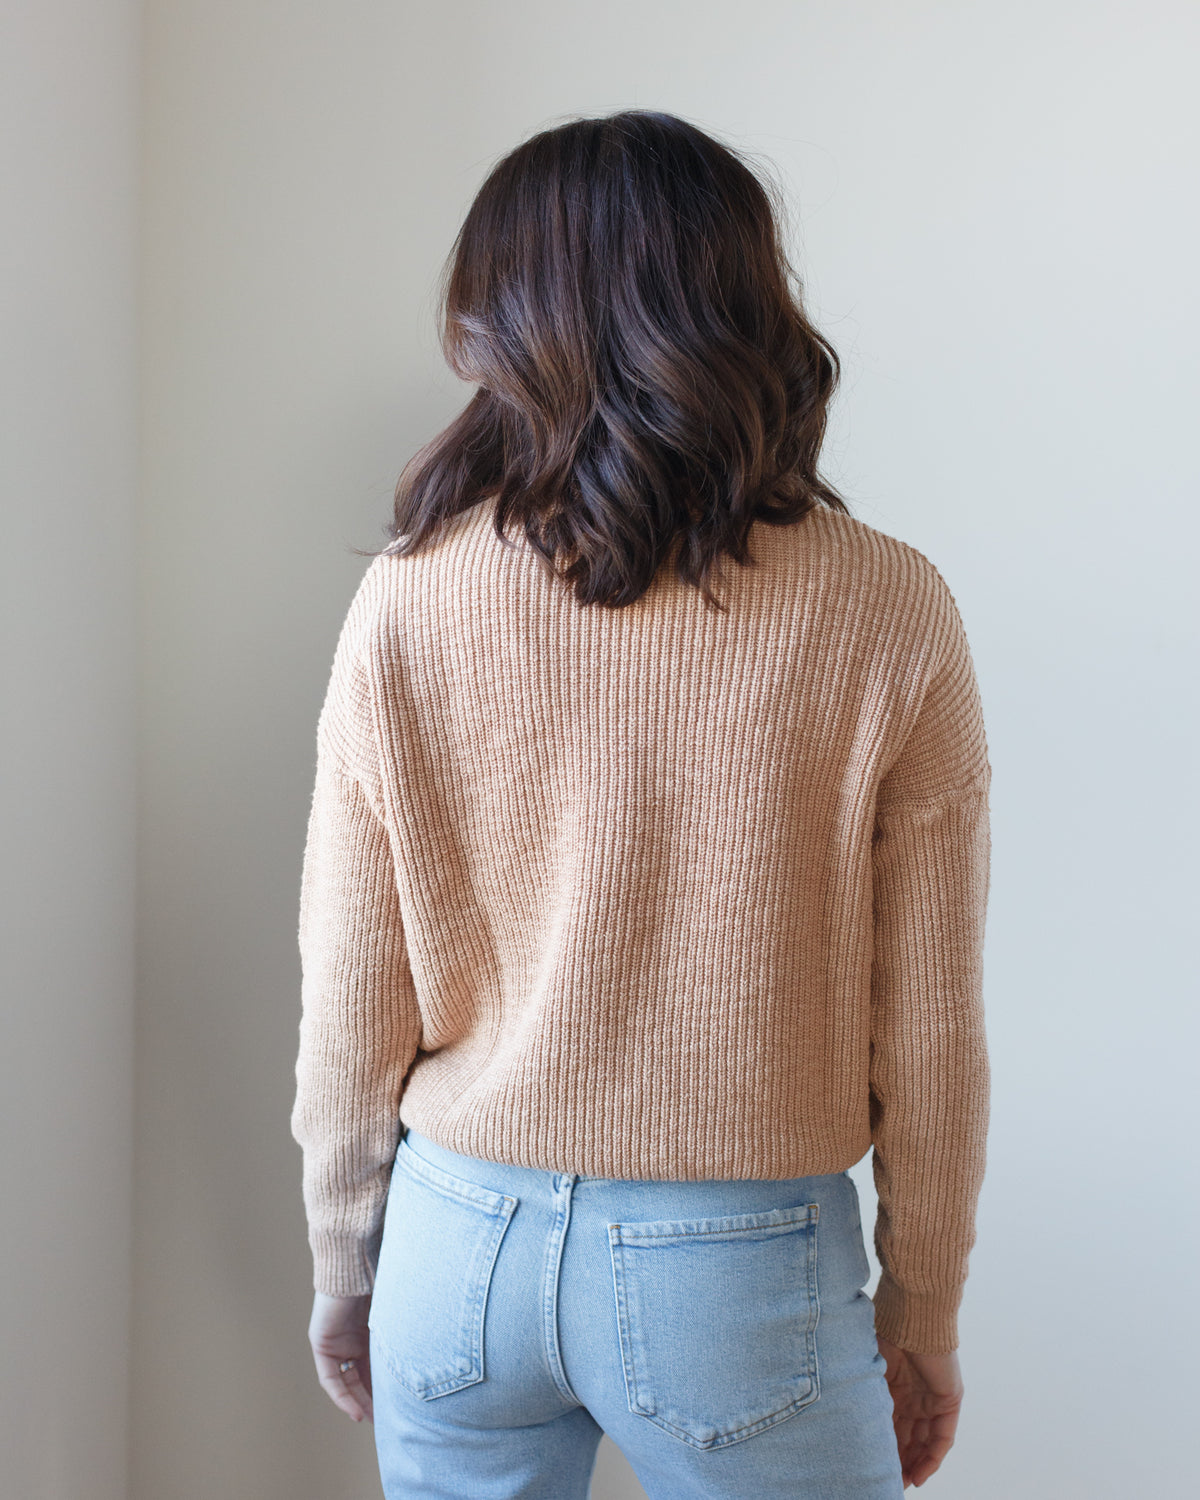 Pull On Sweater in Peach Tan